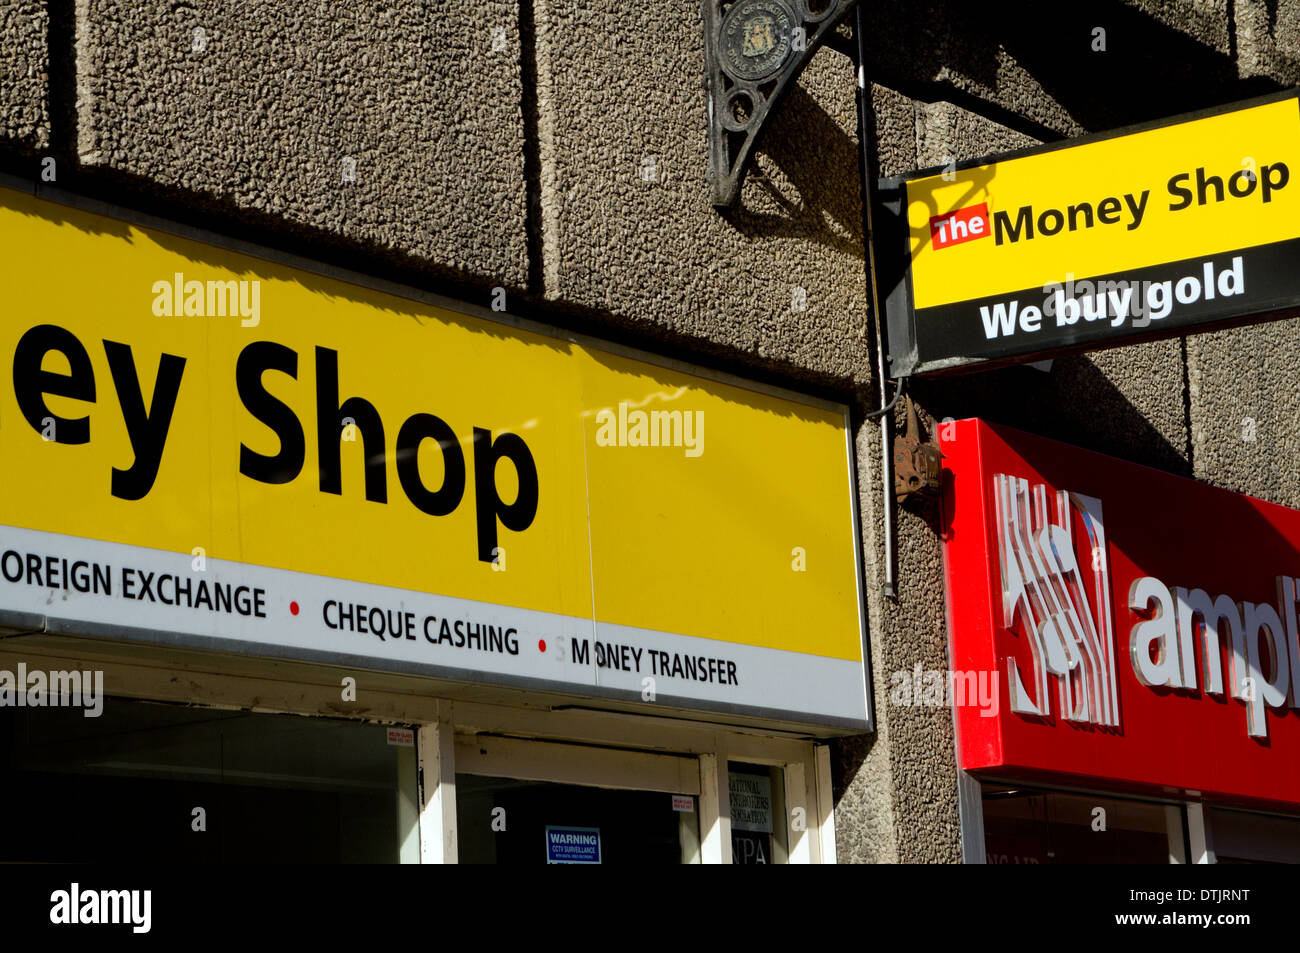 El dinero Shop, Cardiff, Gales del Sur, Reino Unido. Foto de stock